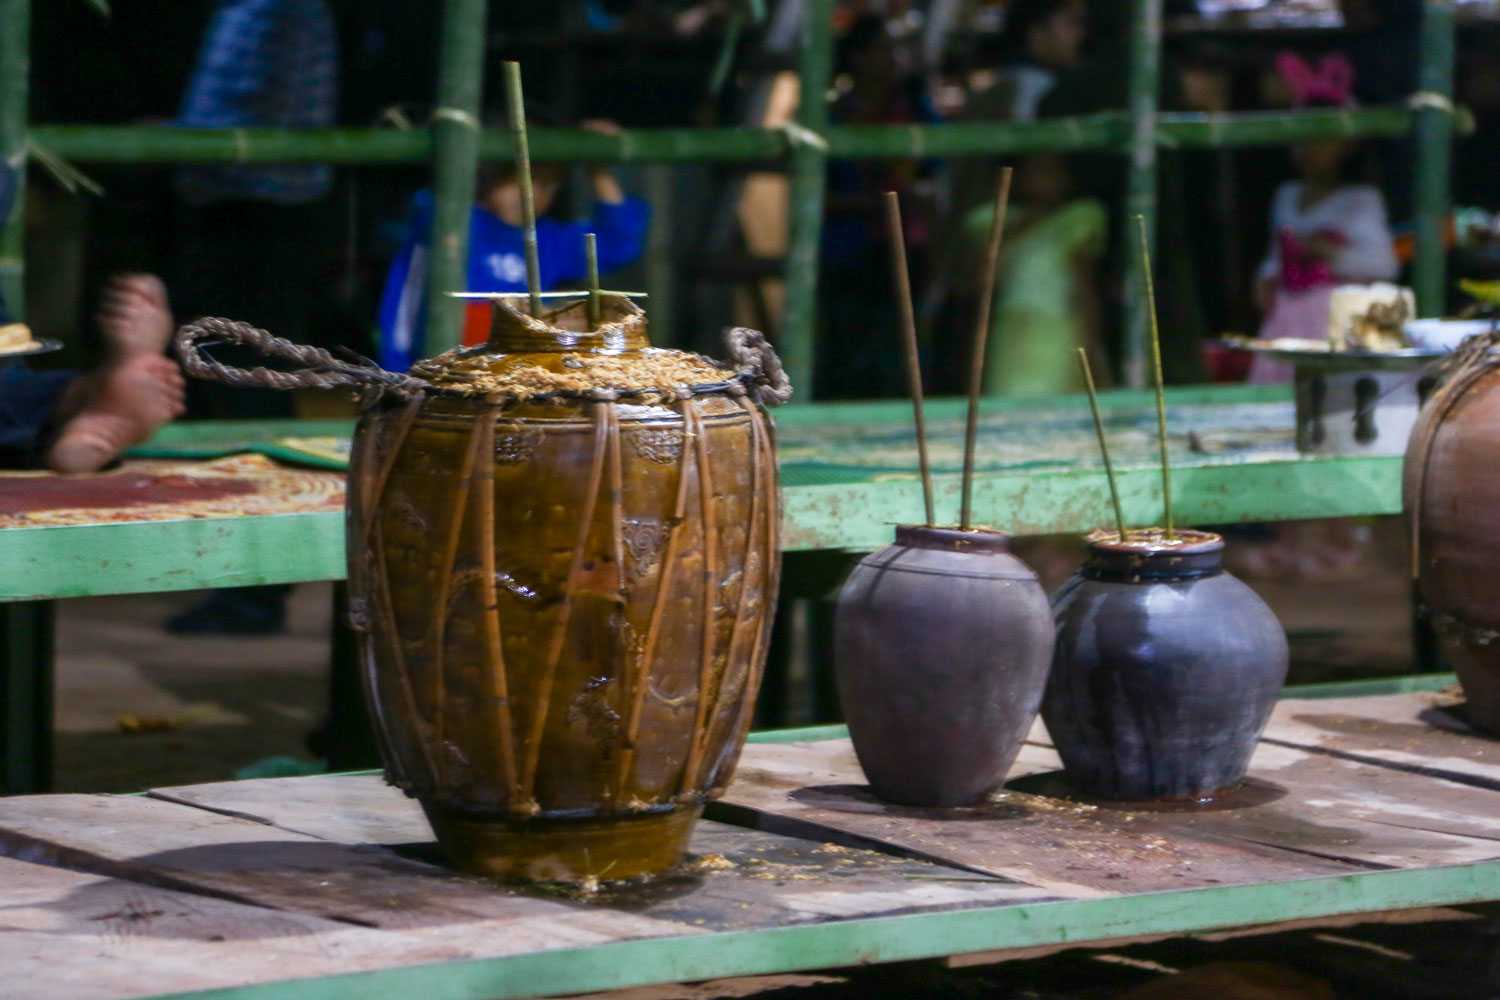 Rượu cần Ma Coong được ủ men trong ché ghè, uống qua các “cần”- ống hút làm bằng tre.